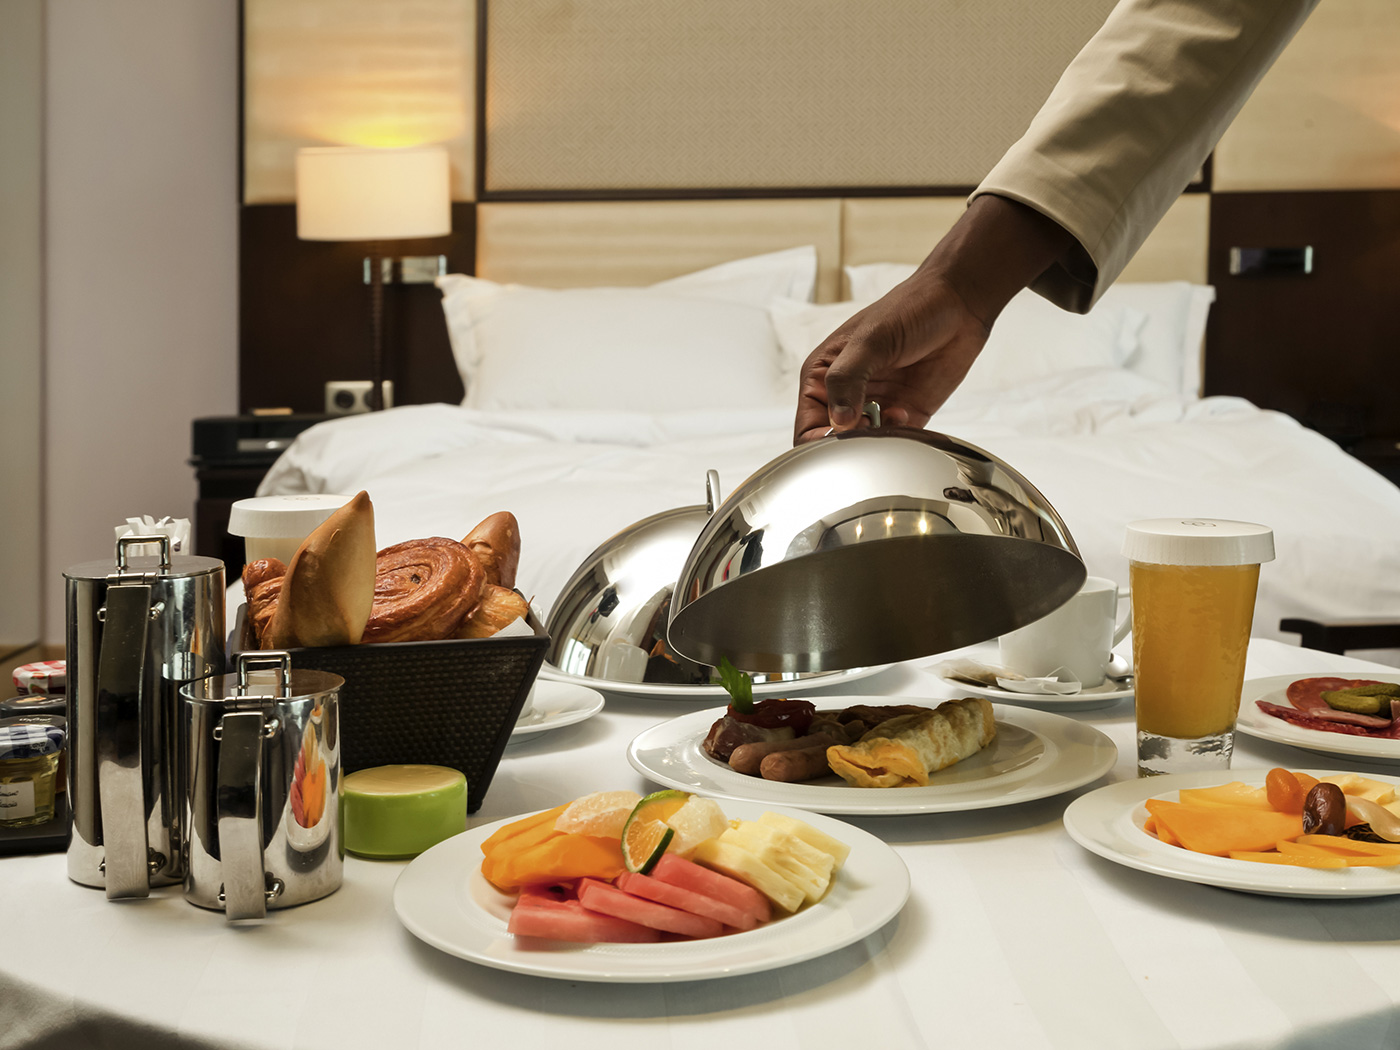 Отель отзывы питание. Завтрак в номер. Рум сервис в гостинице. Завтрак в отеле рум сервис. Завтрак в гостинице.